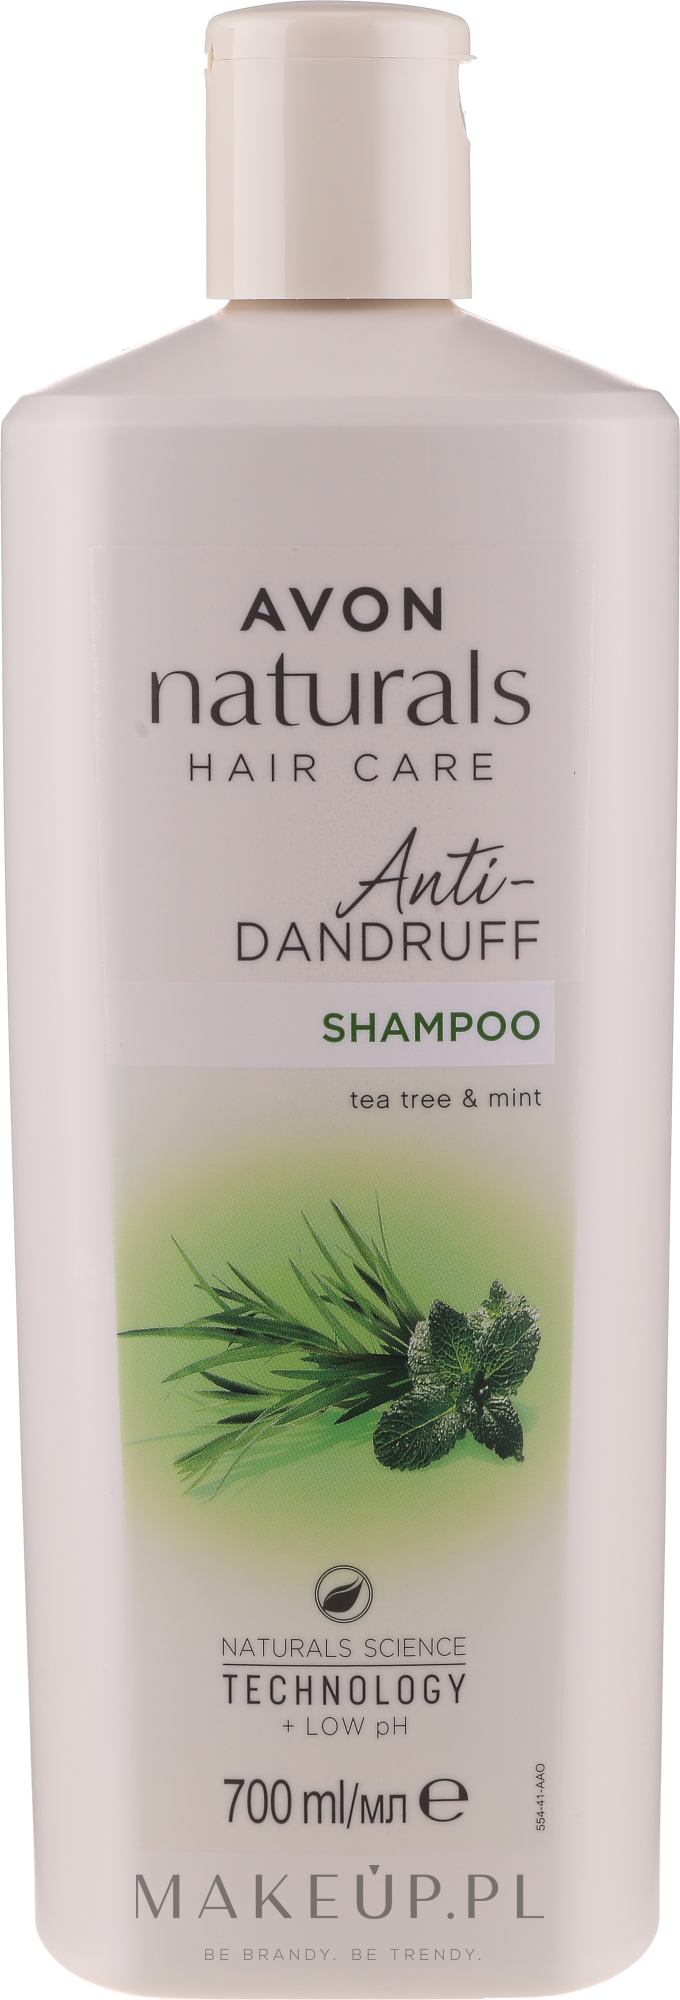 avon szampon przeciwlupiezowy mieta i drzewo herbaciane sklad